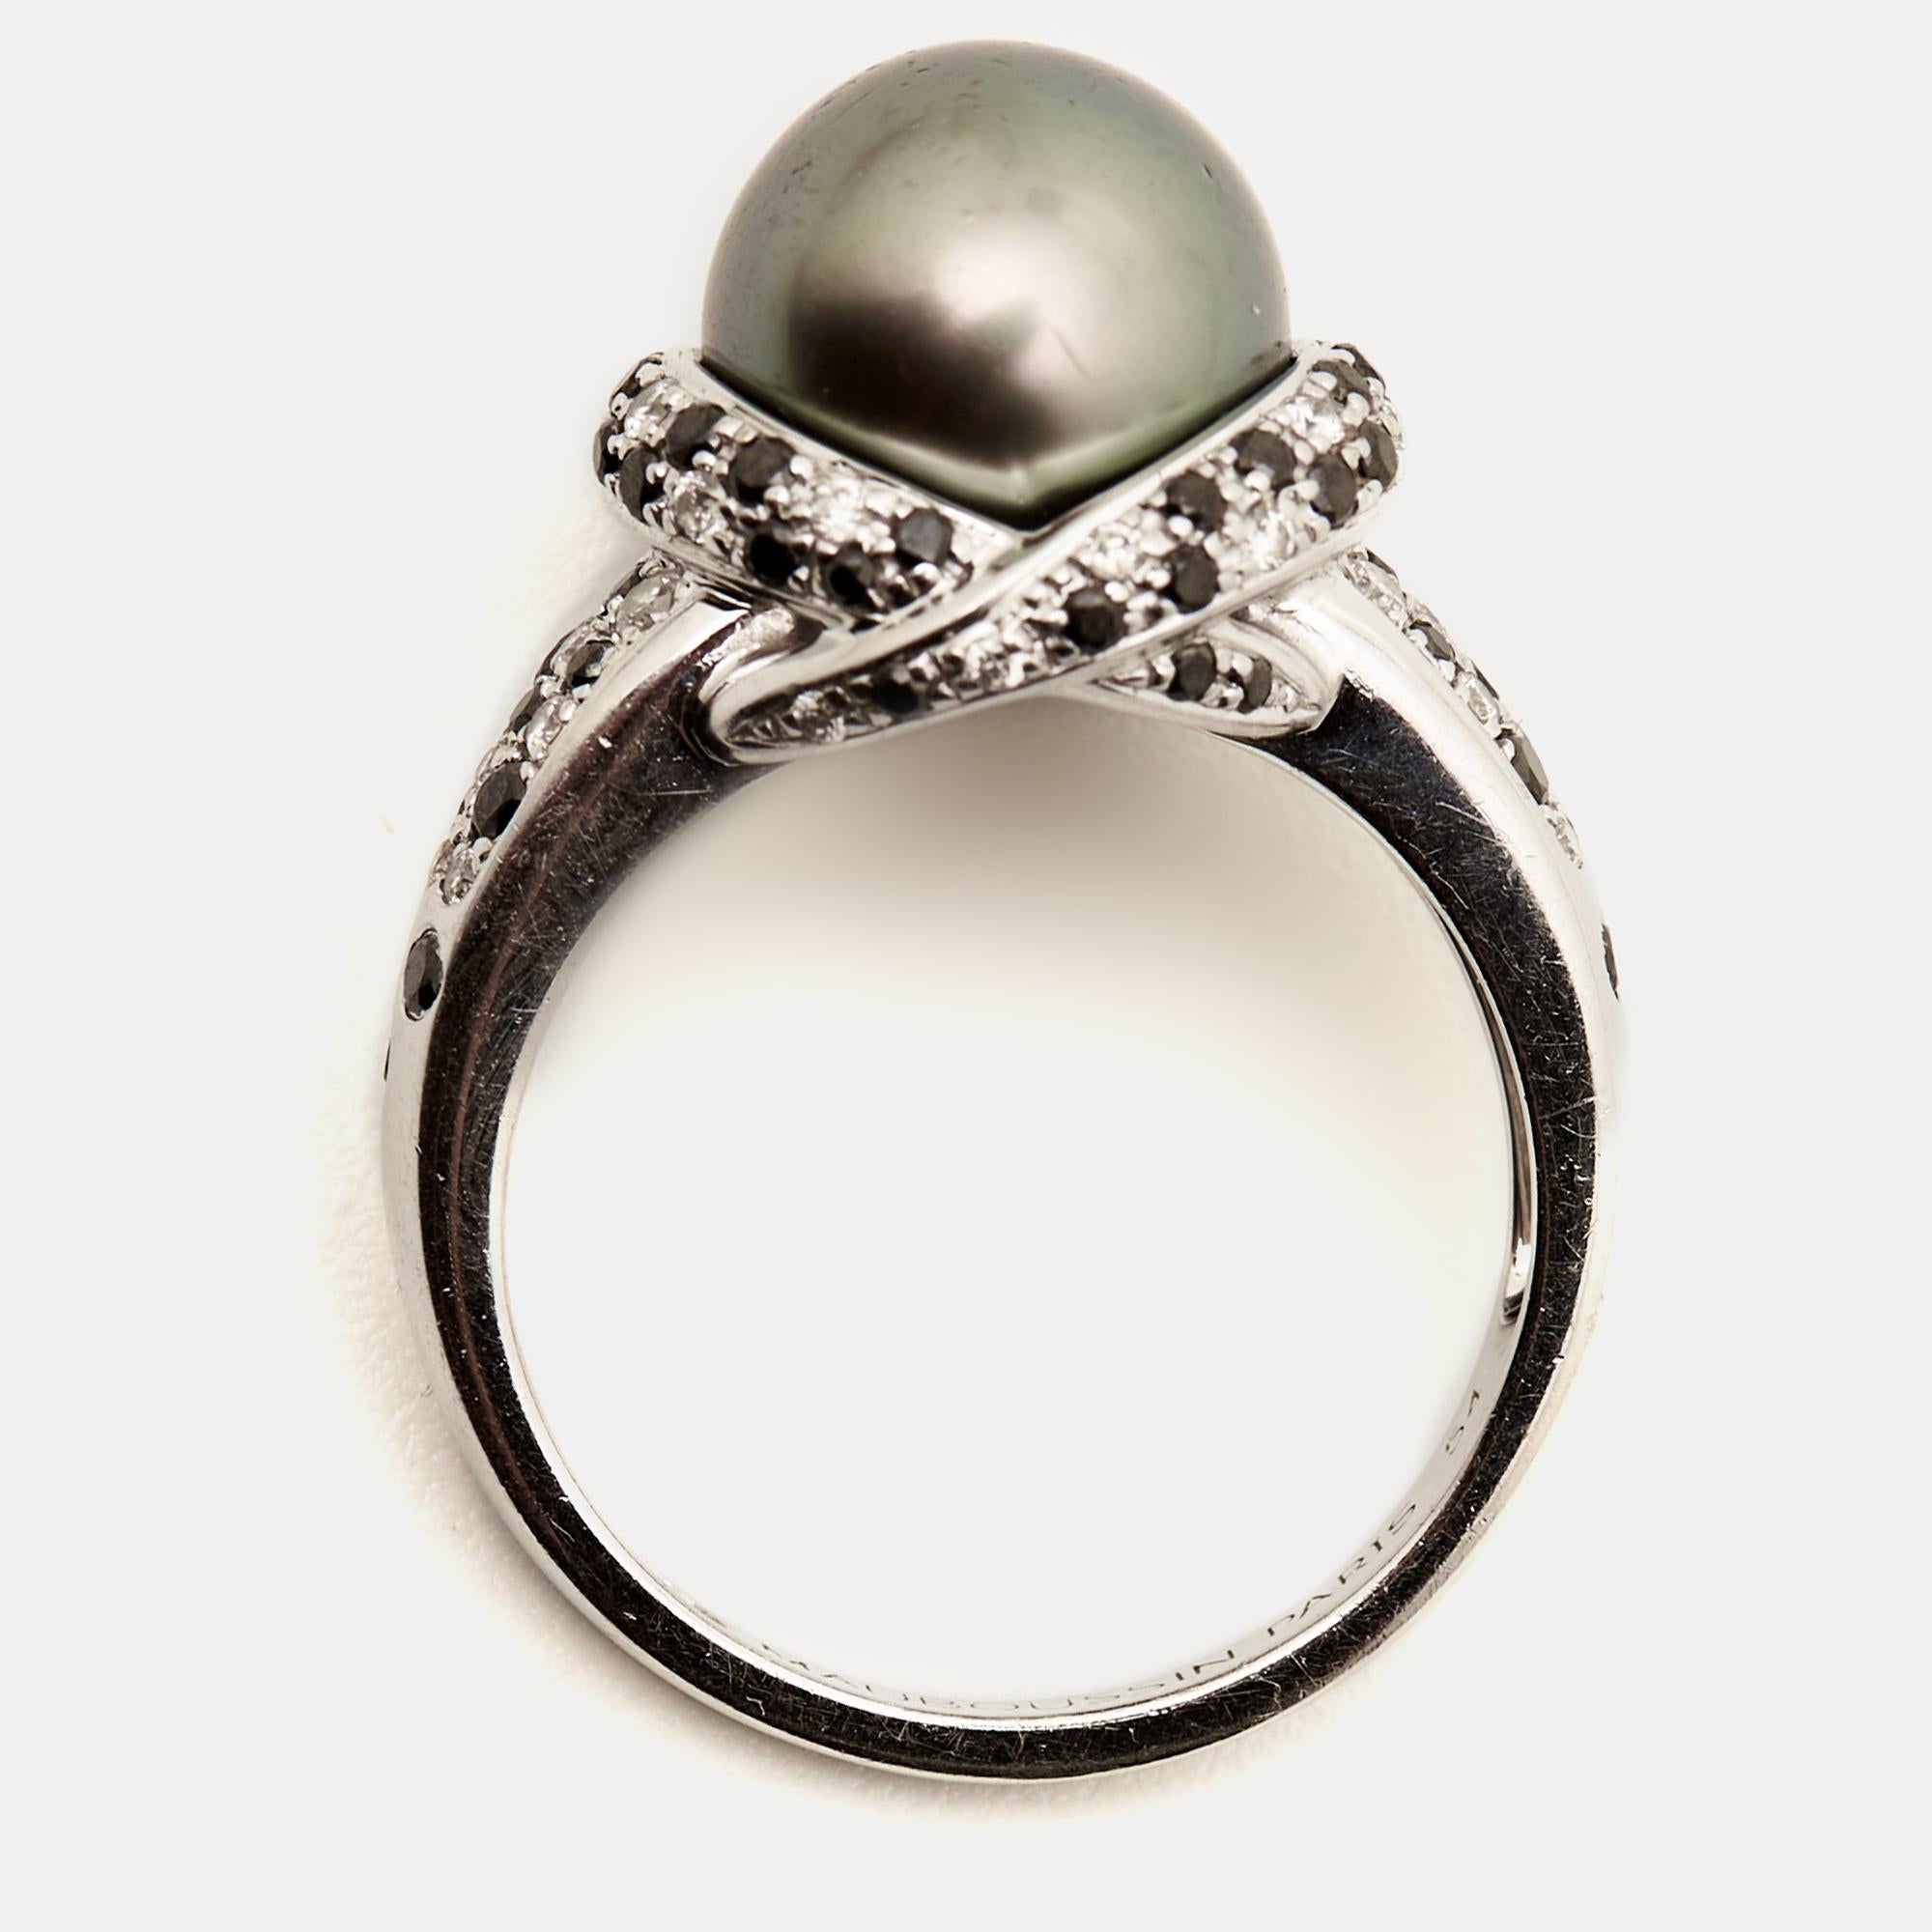 Erleben Sie den Inbegriff von Luxus und Handwerkskunst mit diesem sorgfältig gestalteten Perlenring von Mauboussin. Seine zeitlose Eleganz und seine außergewöhnlichen Details machen ihn zu einem Highlight für jede Gelegenheit.

